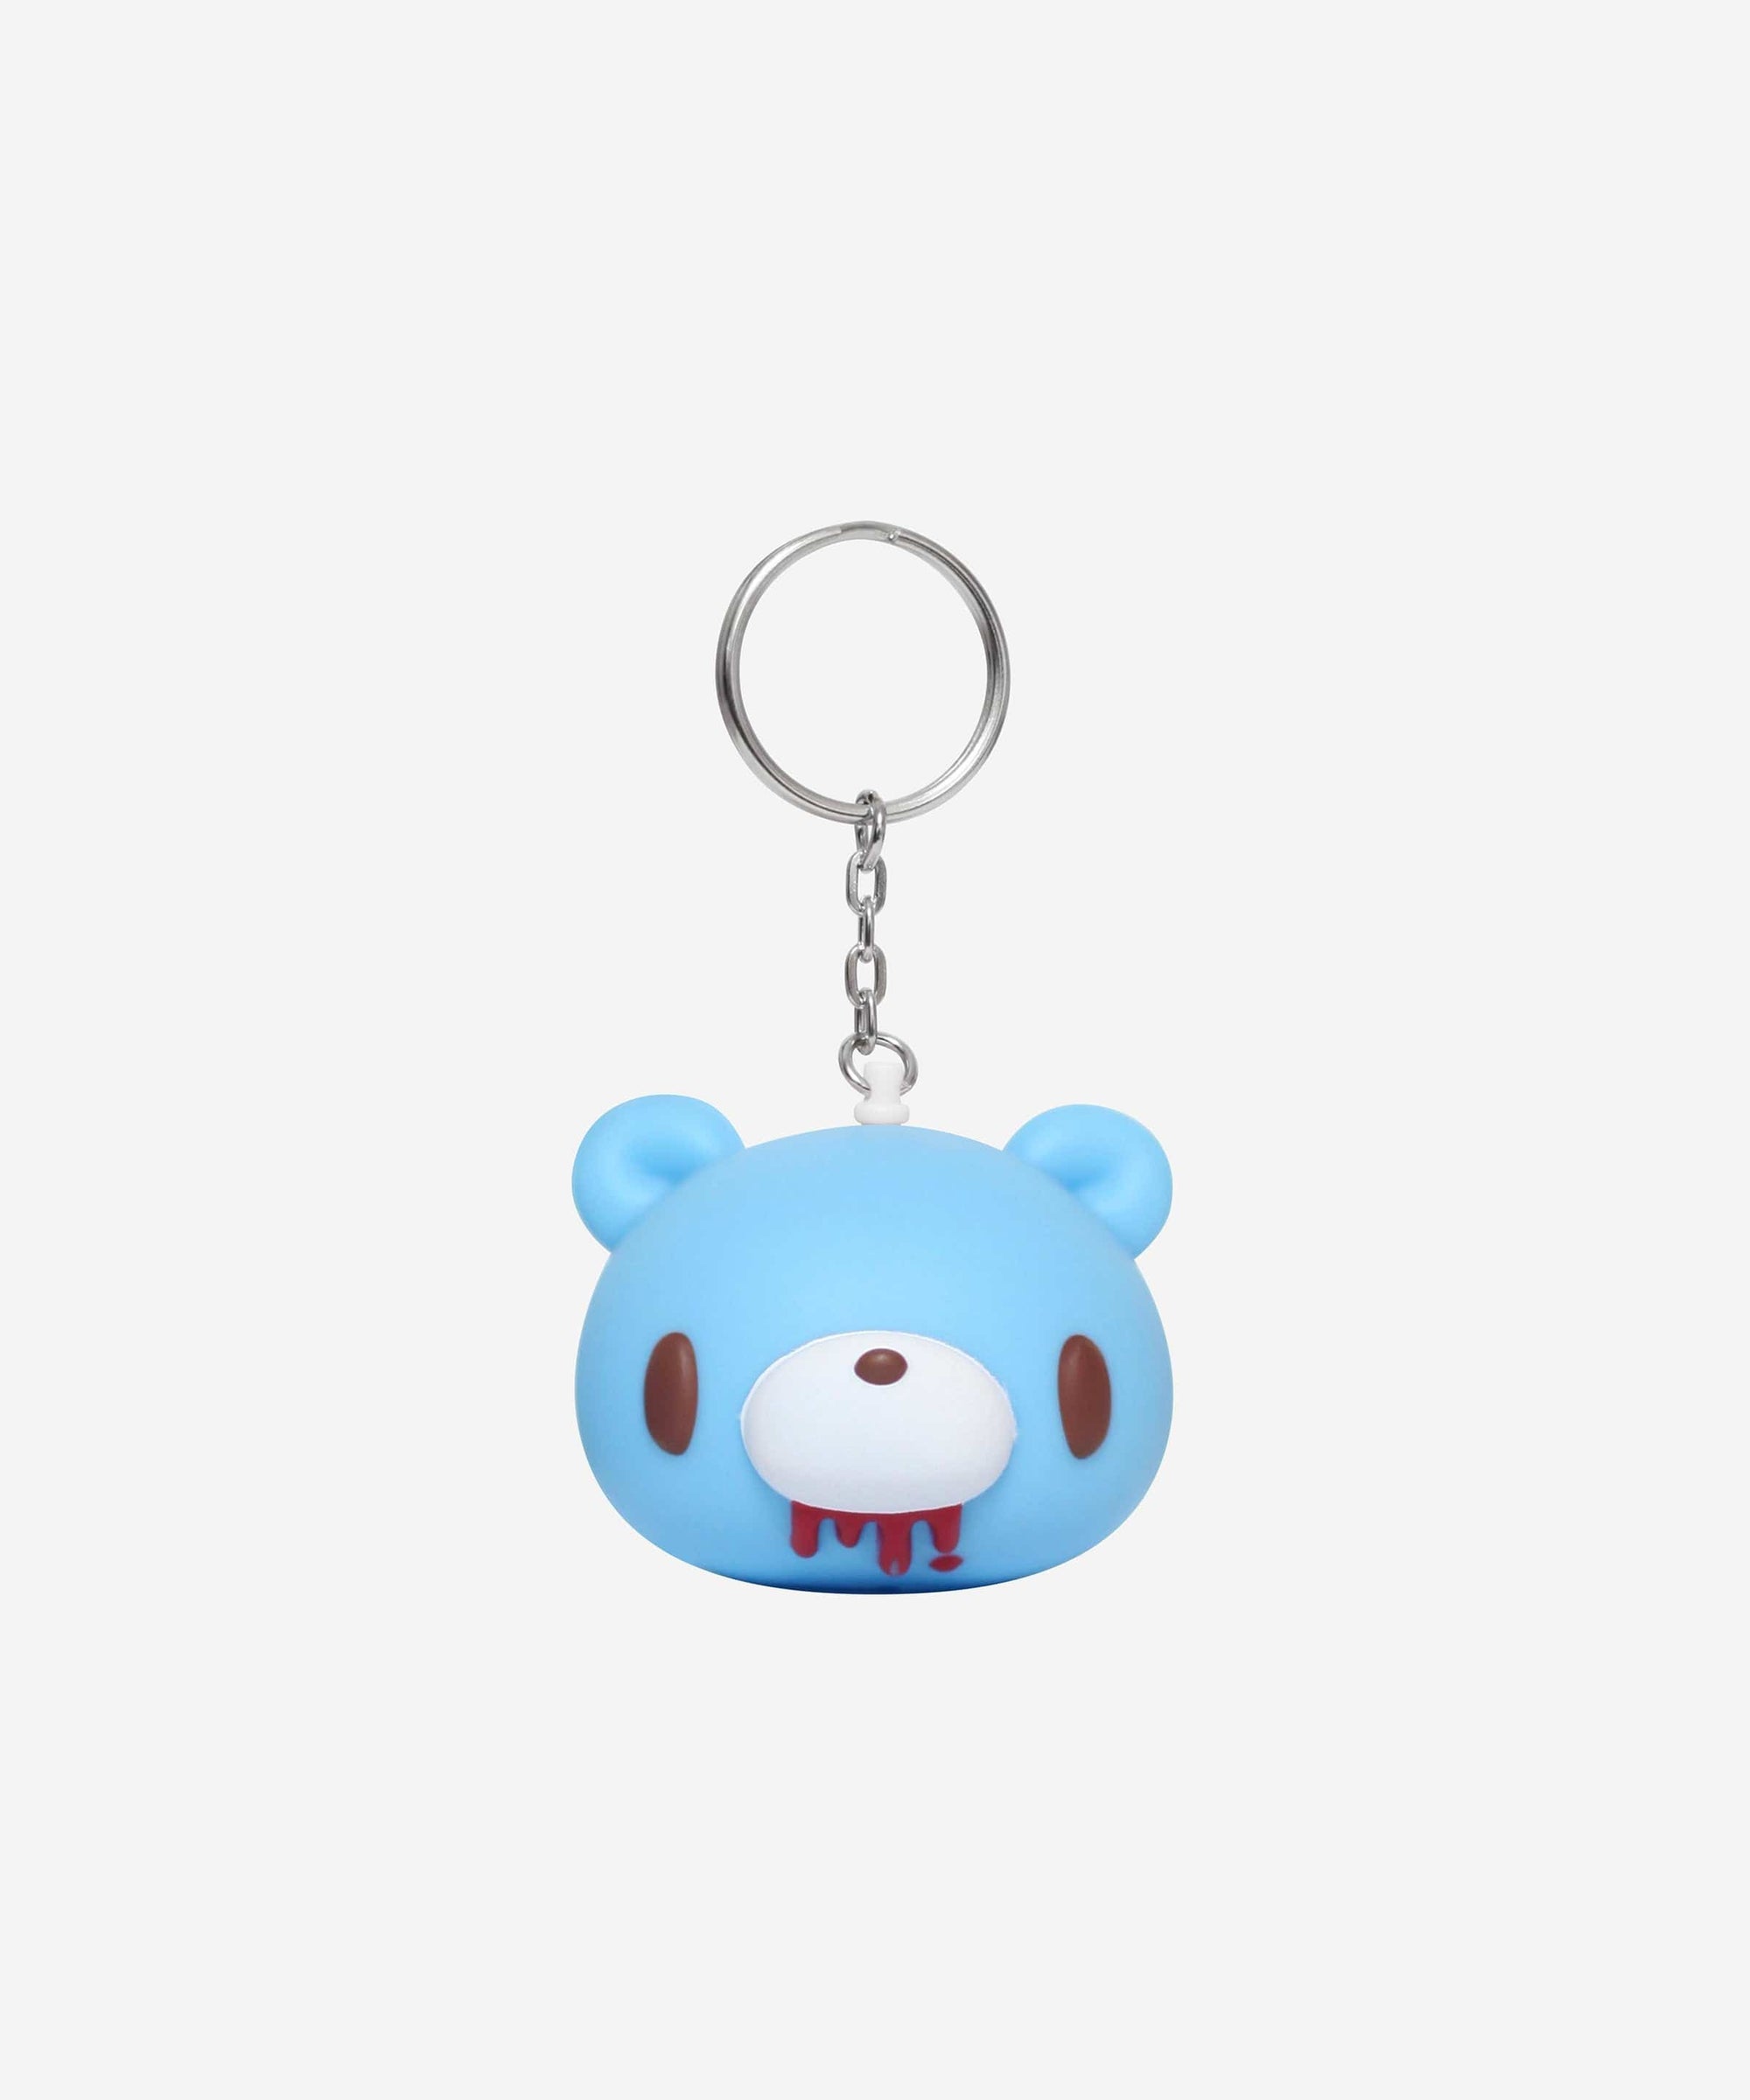 Gloomy Bear Blind Box Mini Figure [BLUE]